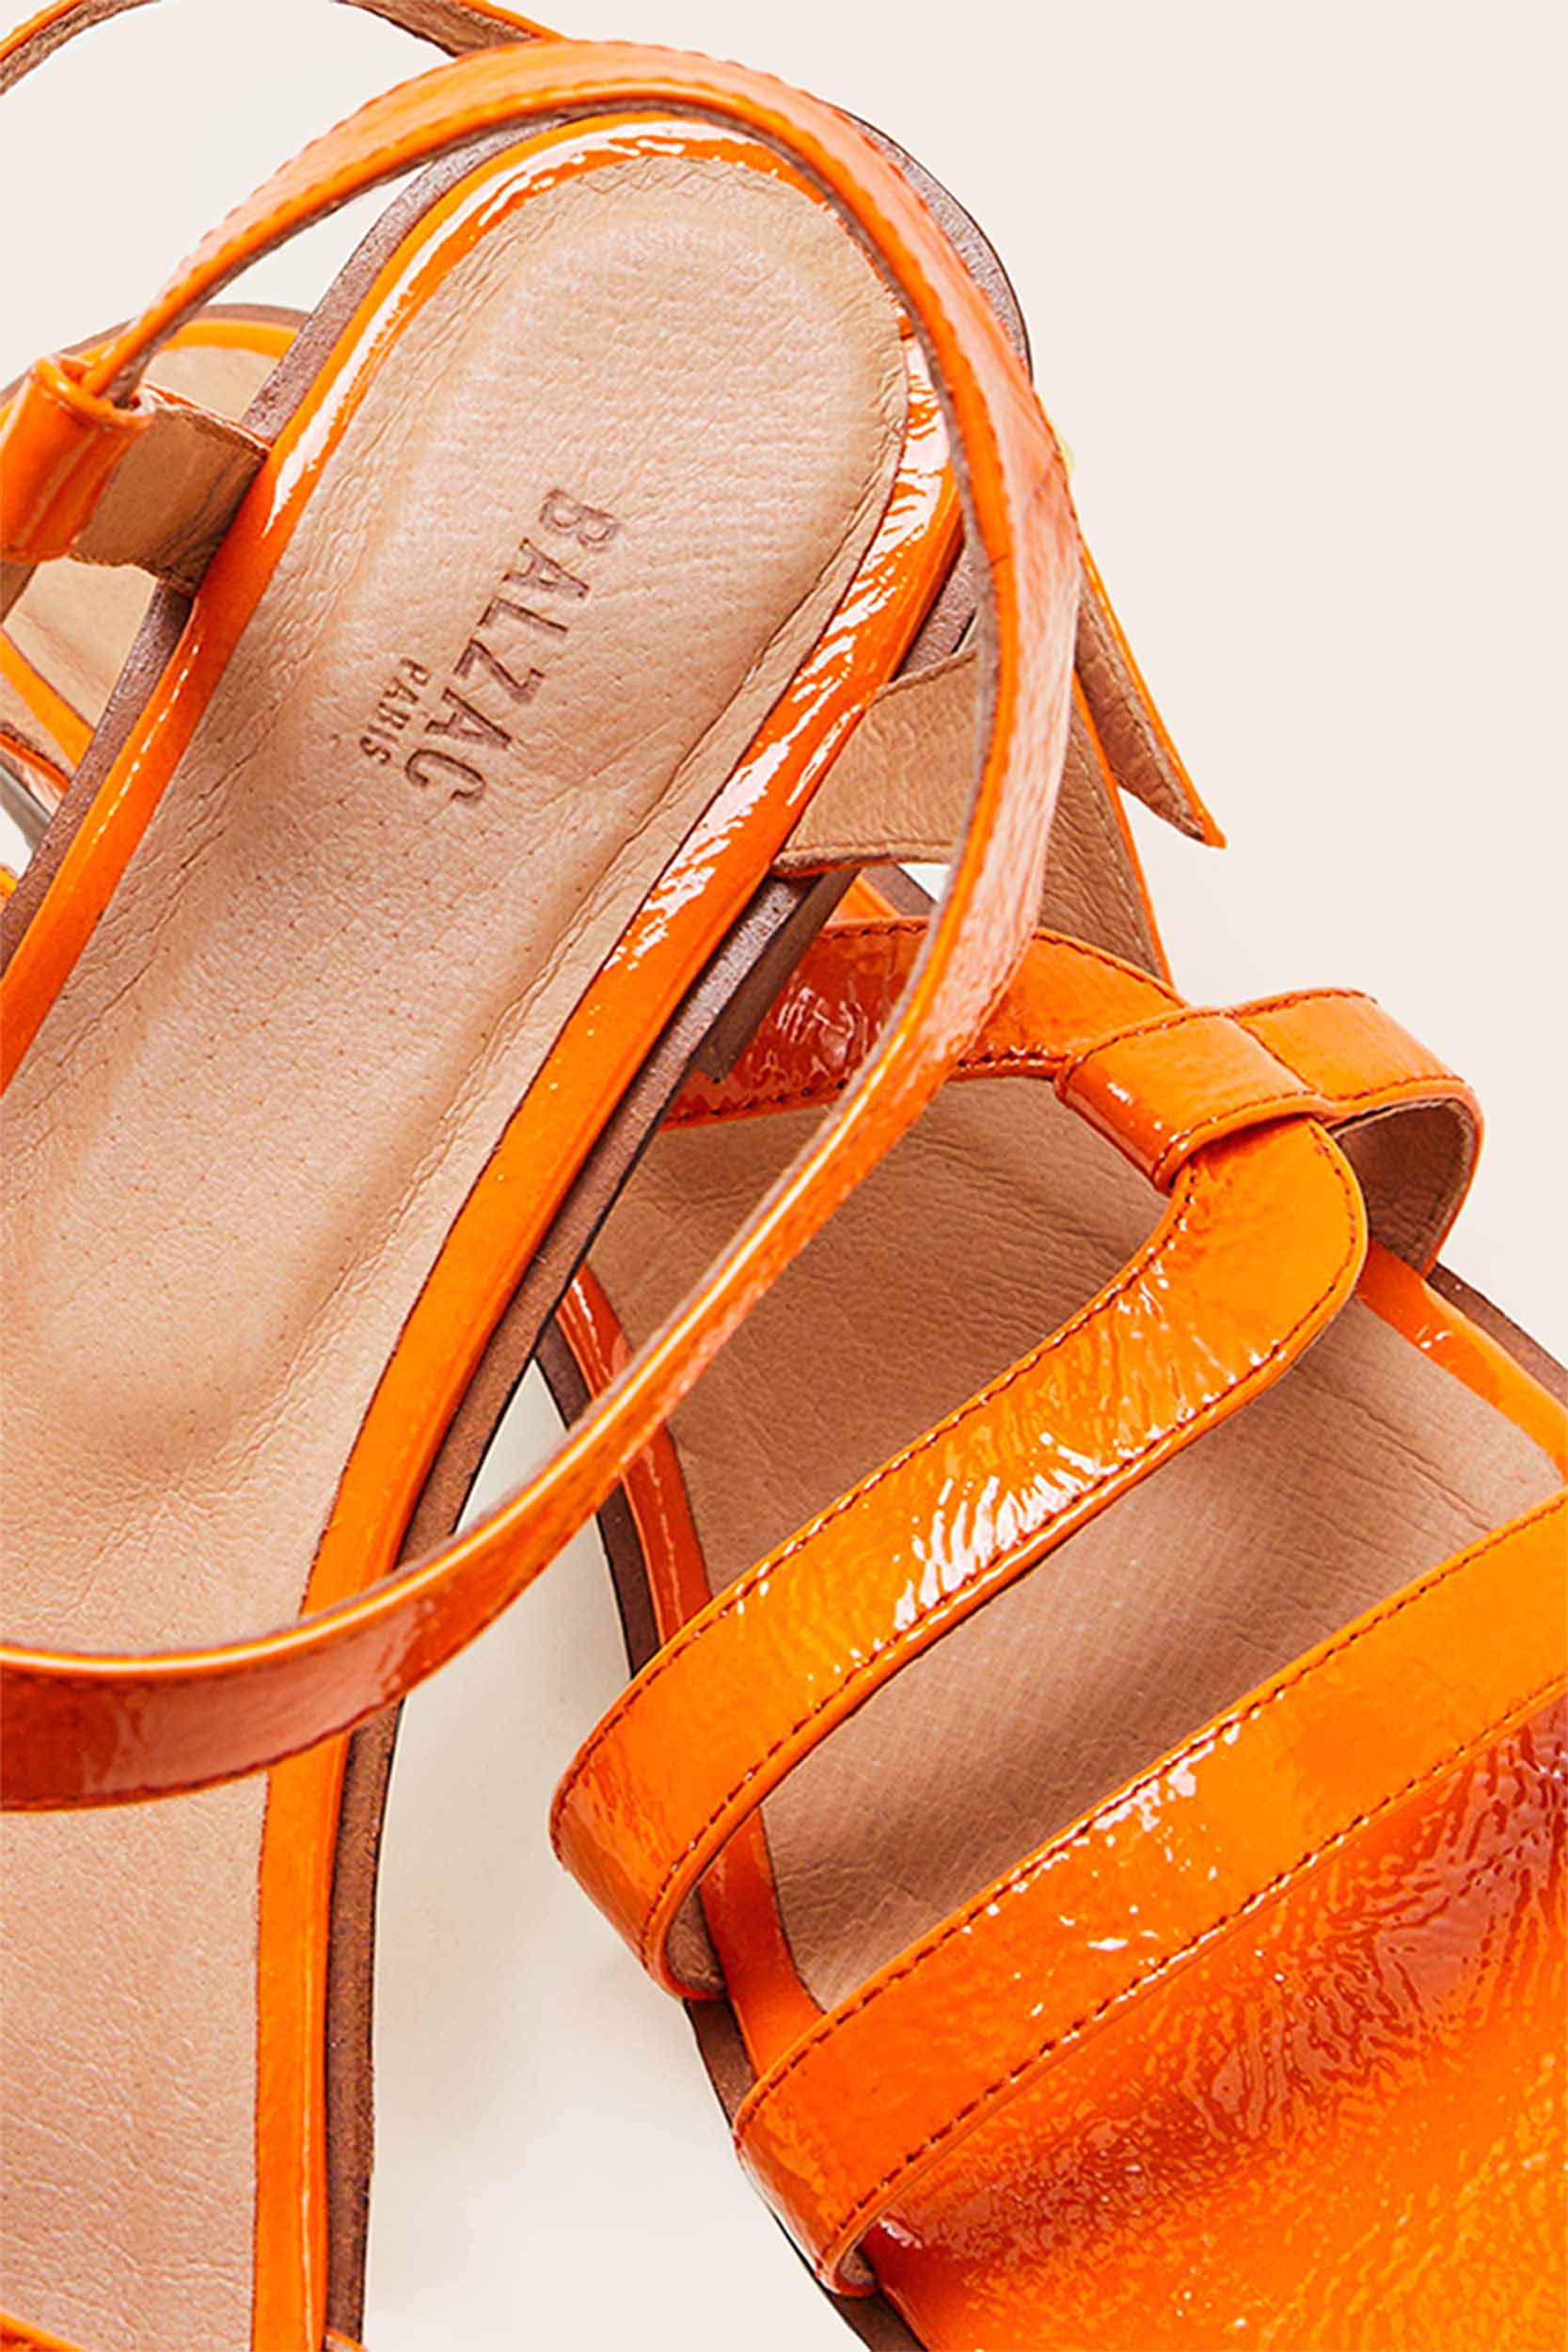 Orange patent Margarita sandals